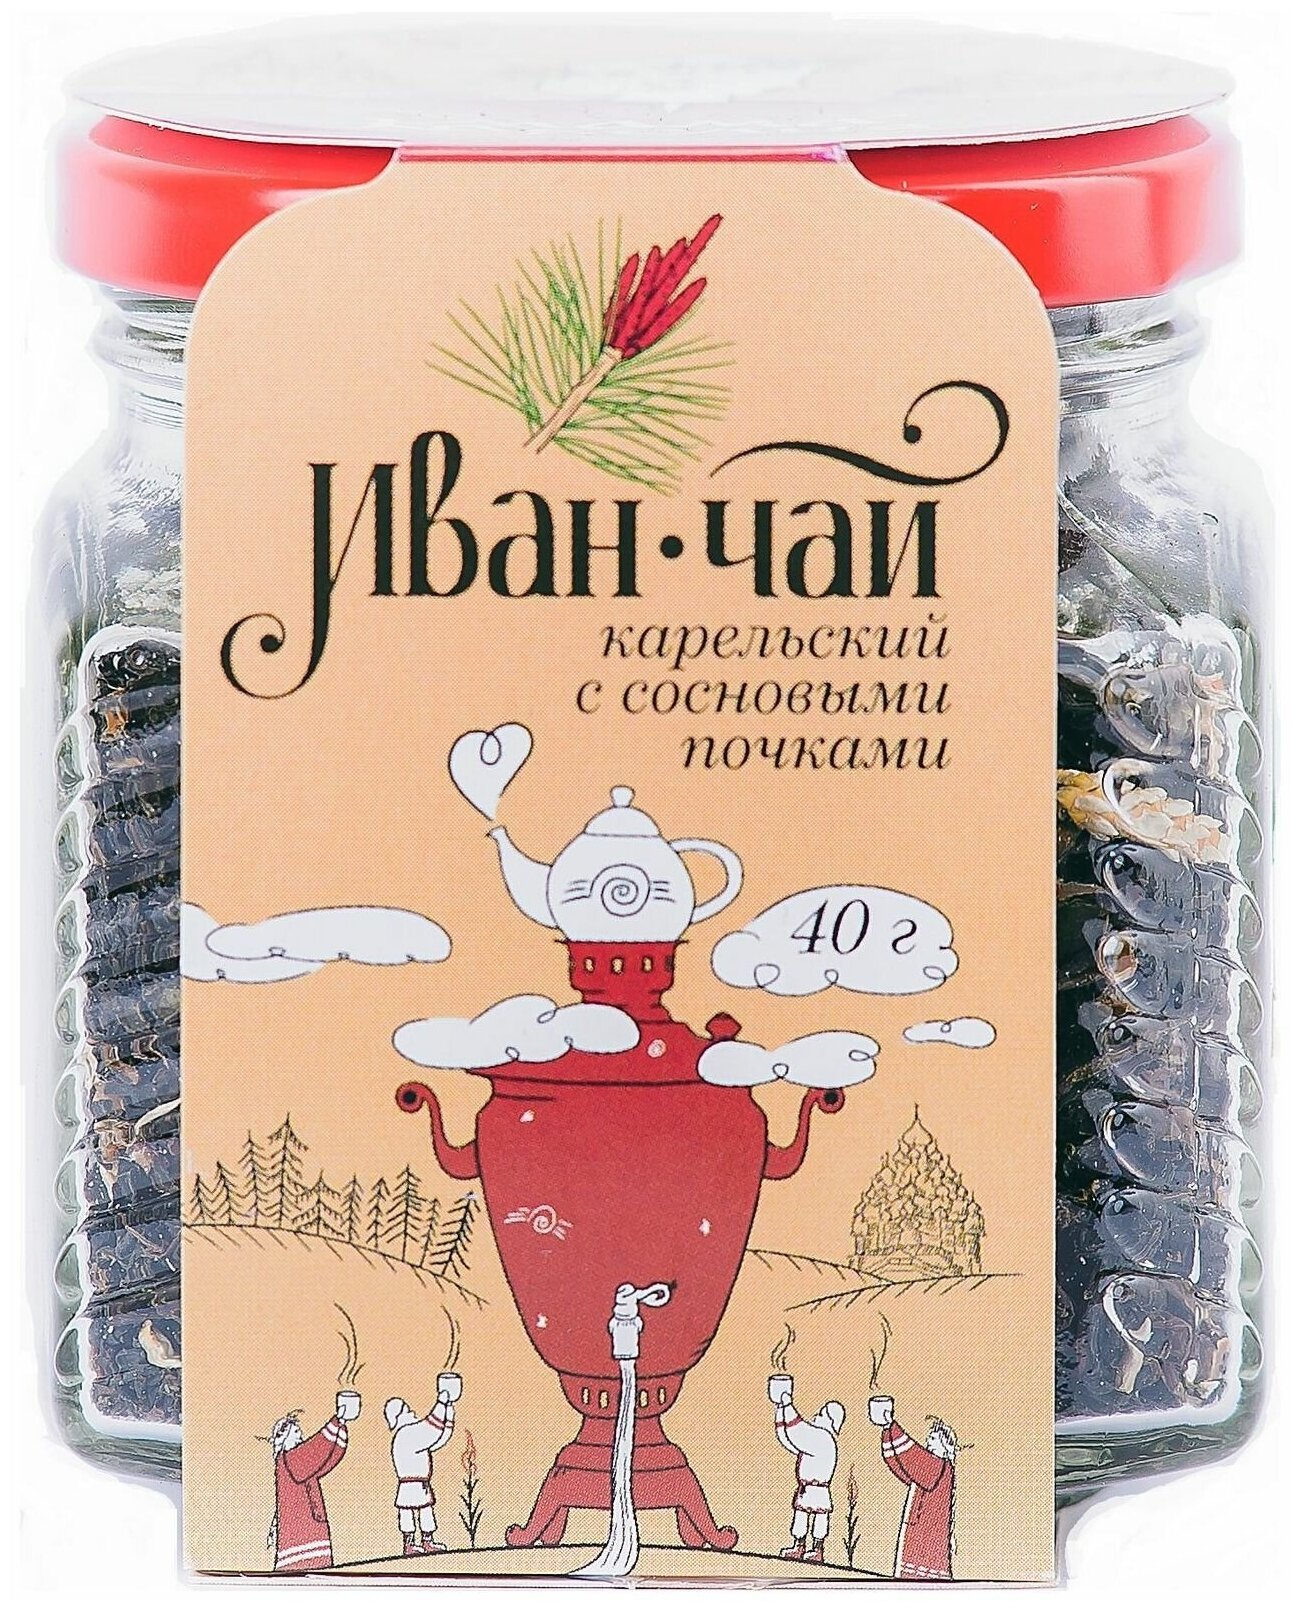 Иван-чай с сосновой почкой 40 г